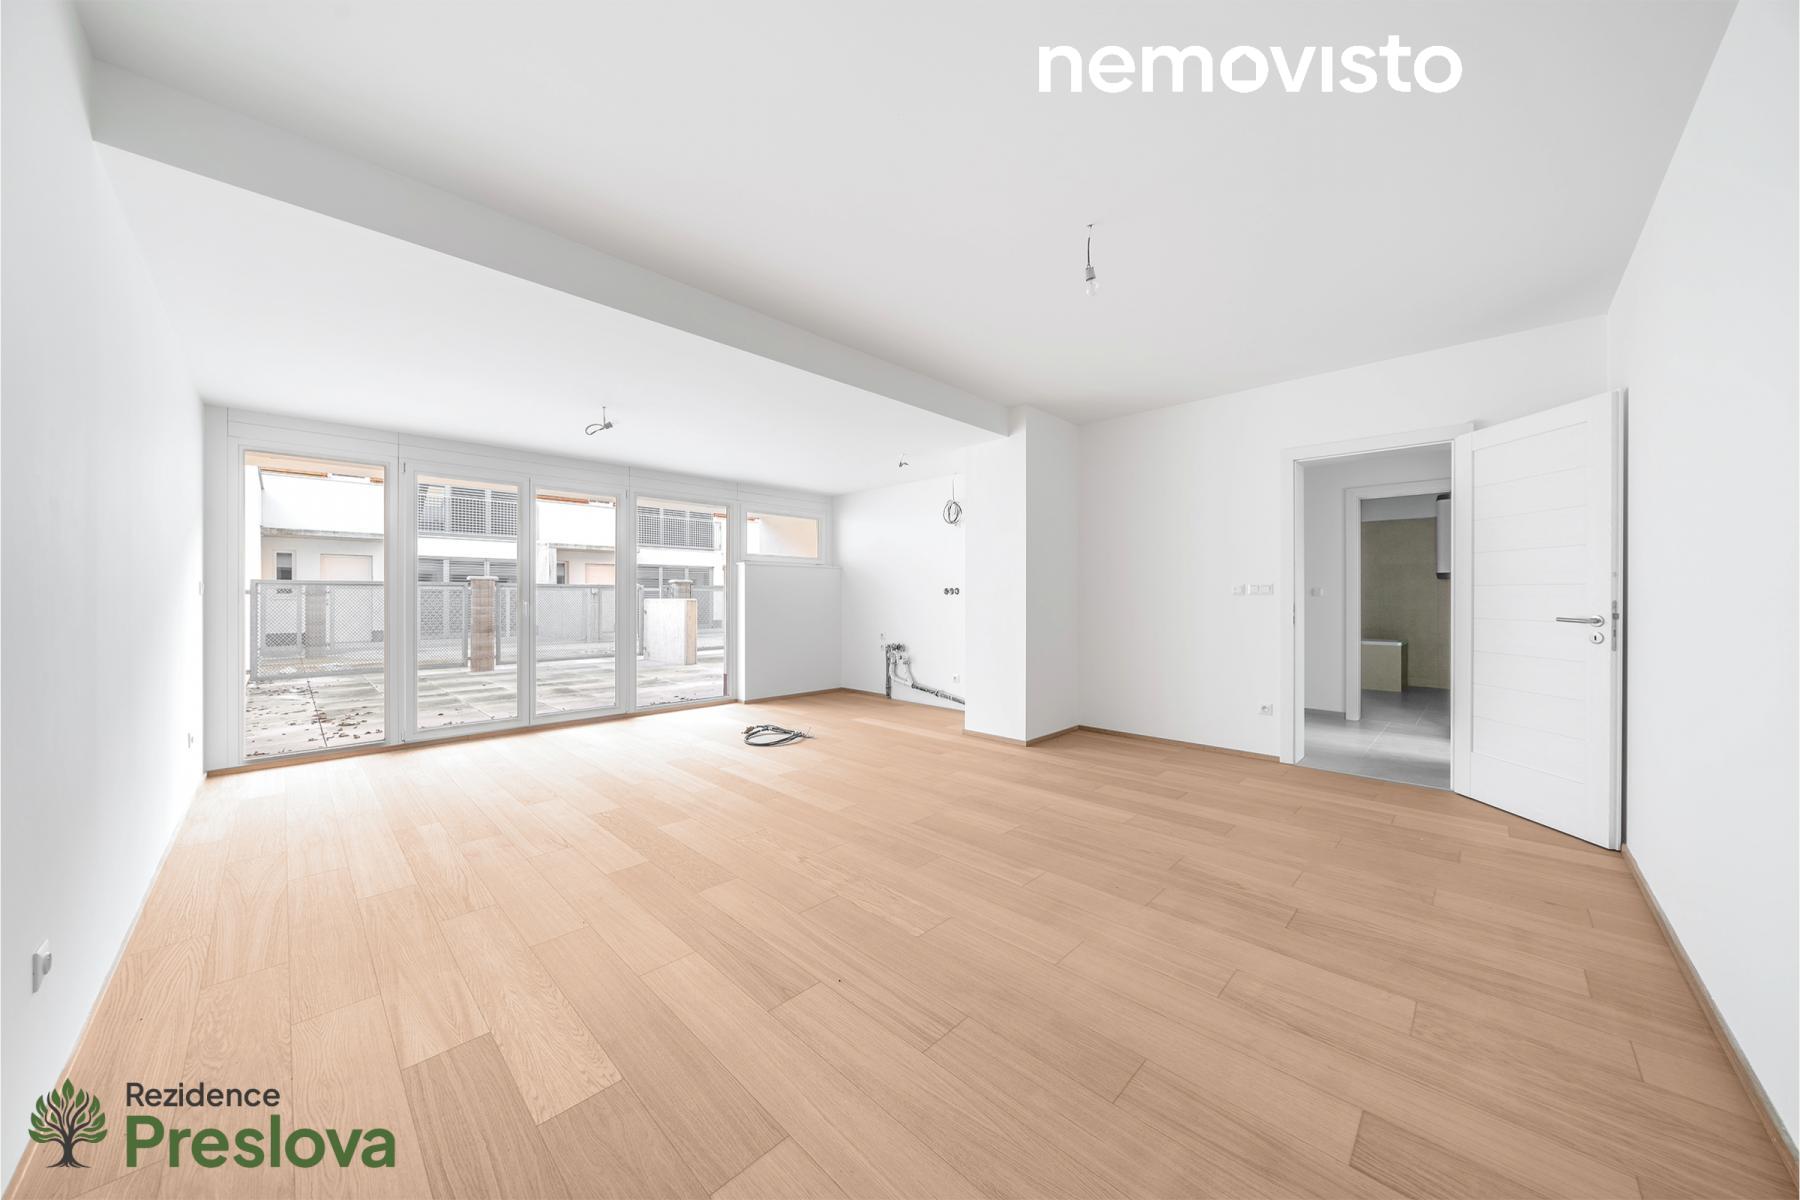 Prodej, novostavba bytu 3+kk s terasou, ul. Preslova, Ostrava - centrum, 87 m2, obrázek č. 1